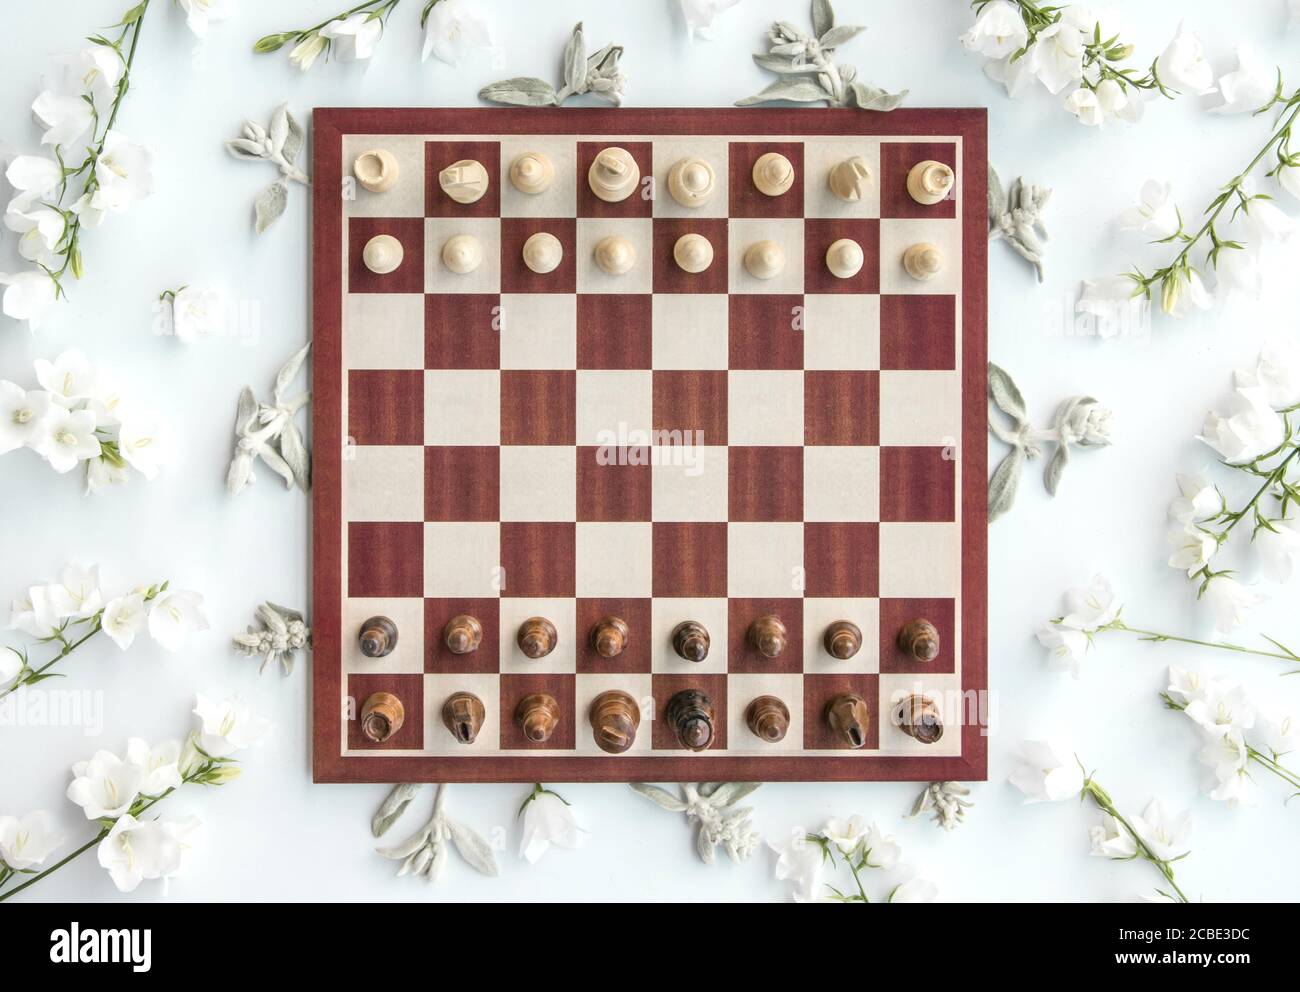 Posizione di partenza del gioco degli scacchi, immagine in stile piatto,  vista dall'alto, gioco degli scacchi Foto stock - Alamy